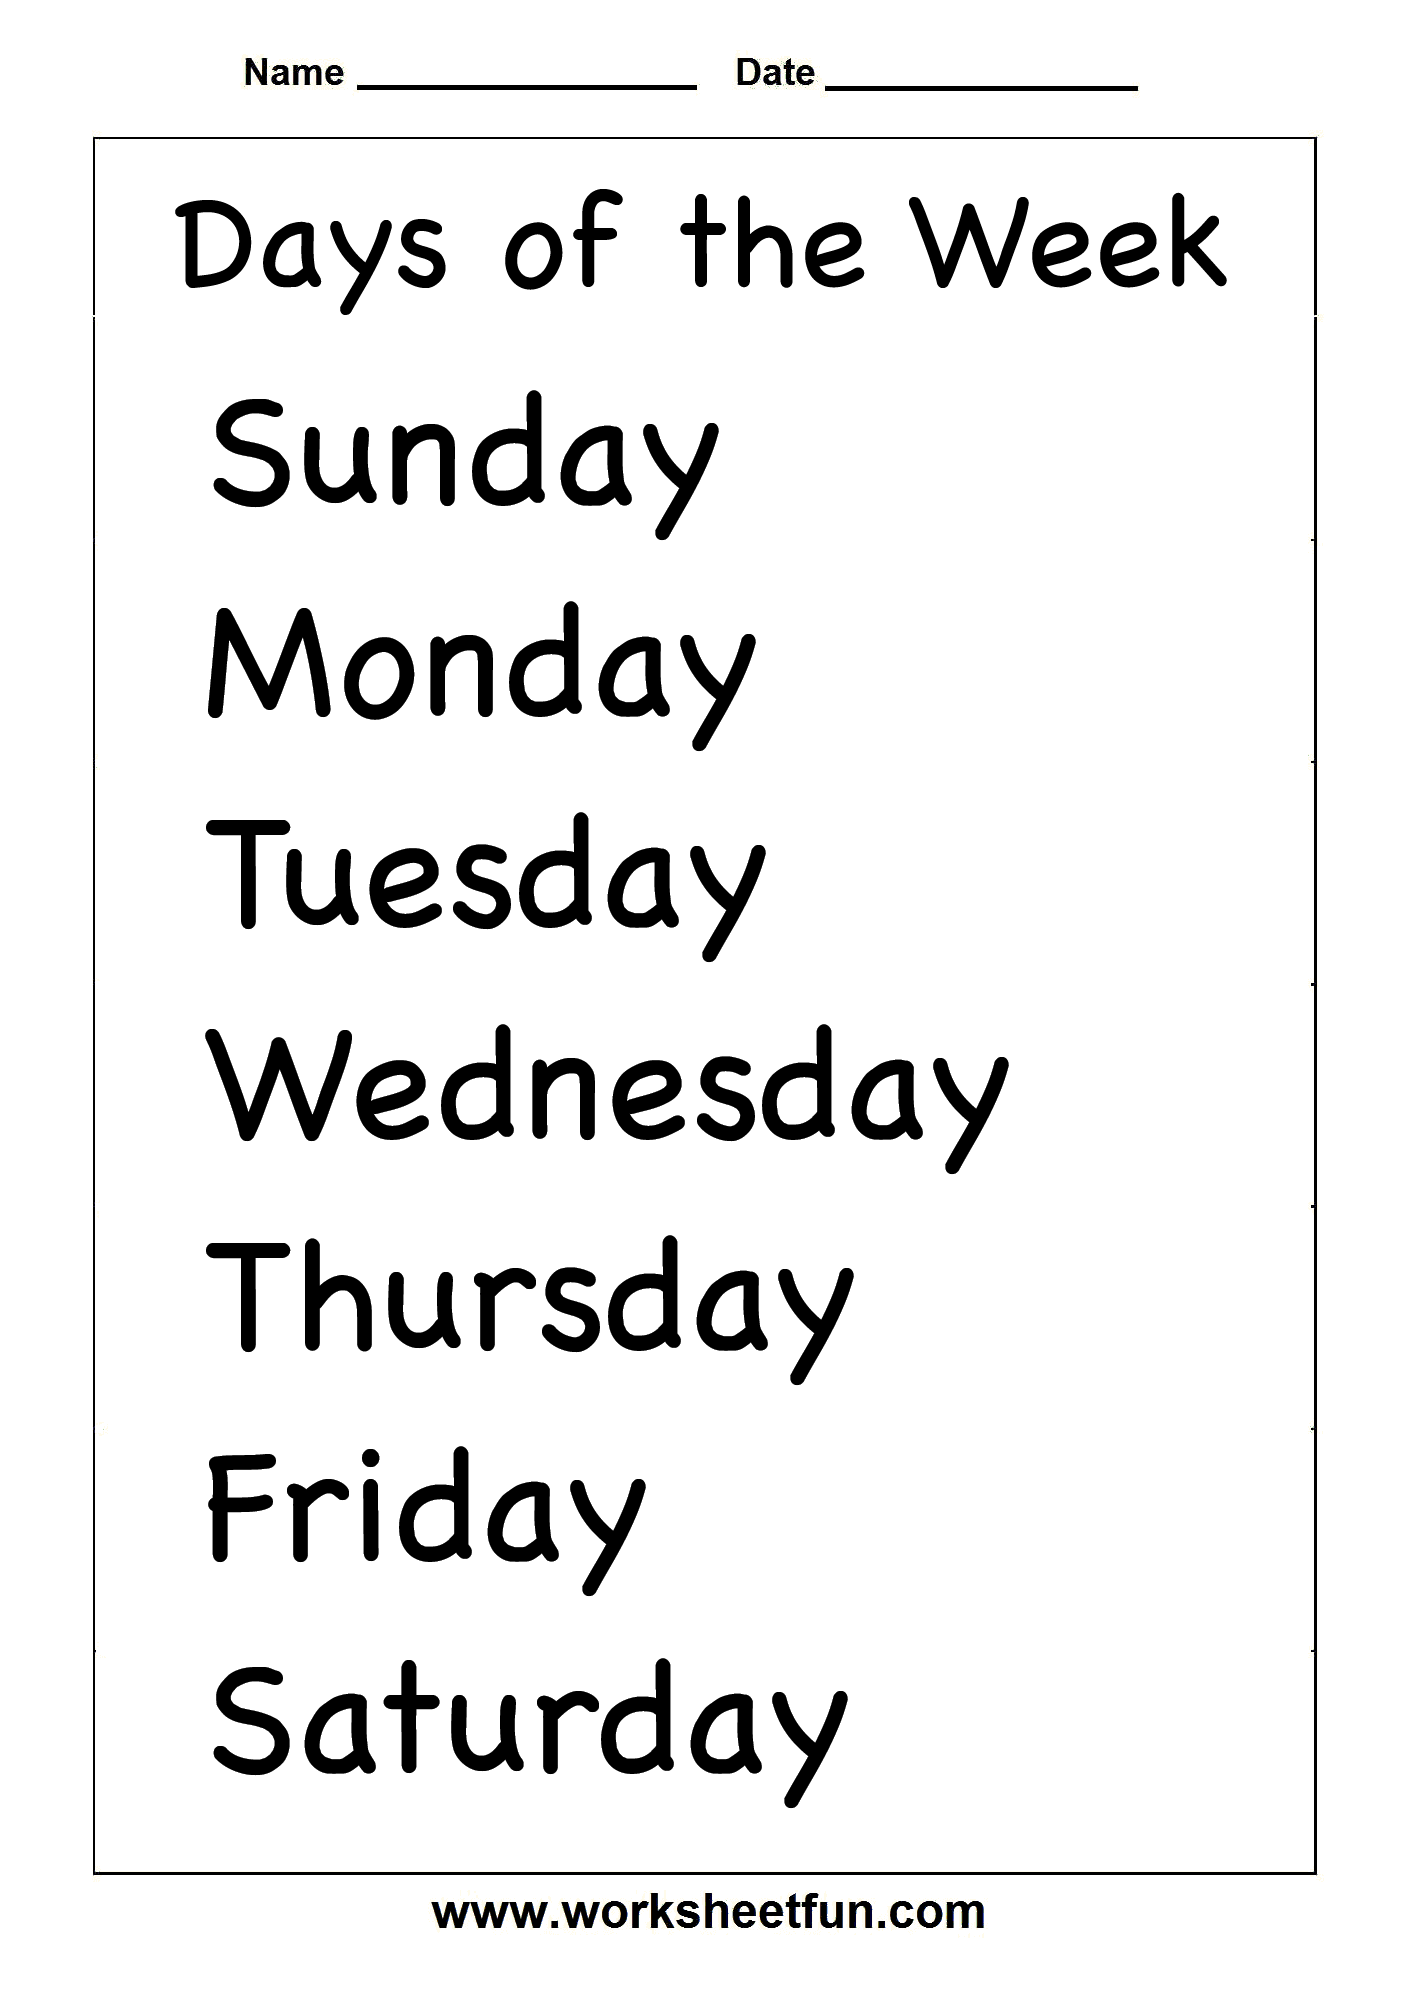 Free Printable Days of the Week Worksheets Image